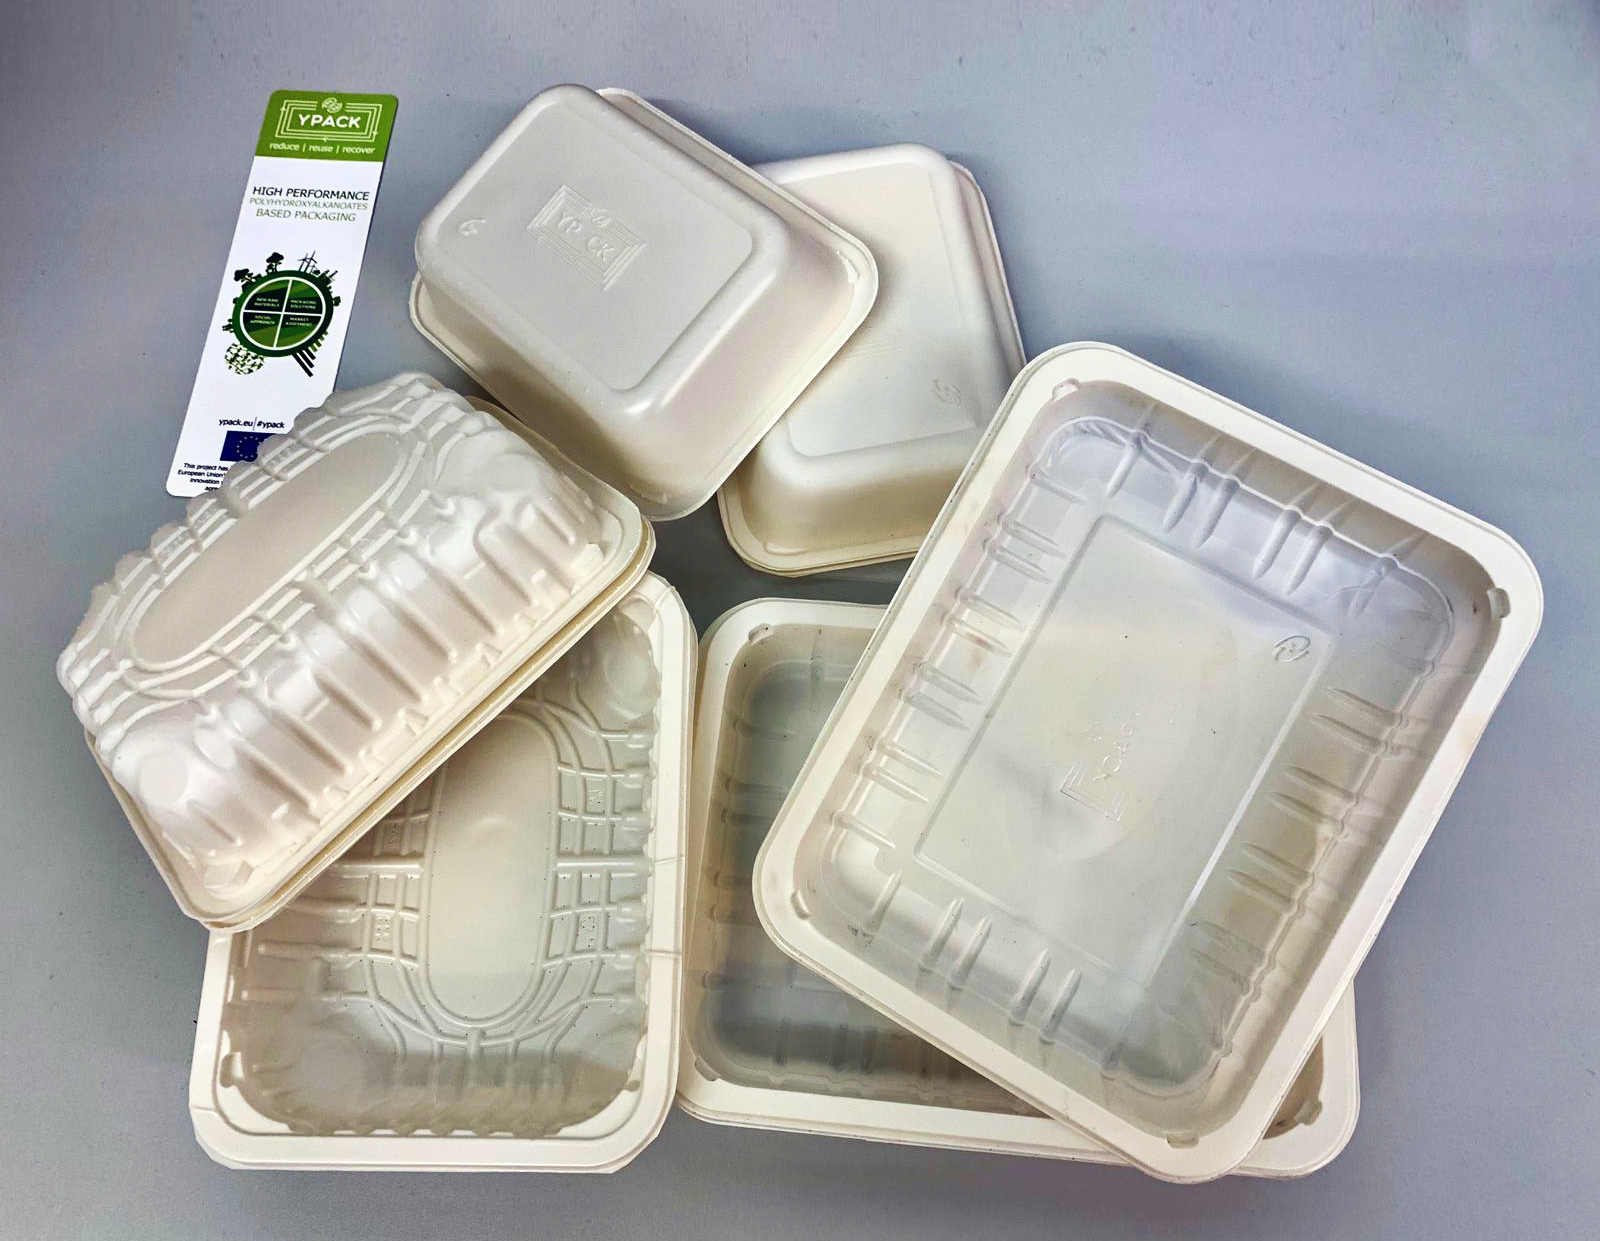 Plastic packaging. Пластиковая упаковка для пищевых продуктов. Полимерная упаковка для пищевых продуктов. Биоразлагаемая упаковка для еды. Биоразлагаемая пластиковая упаковка.